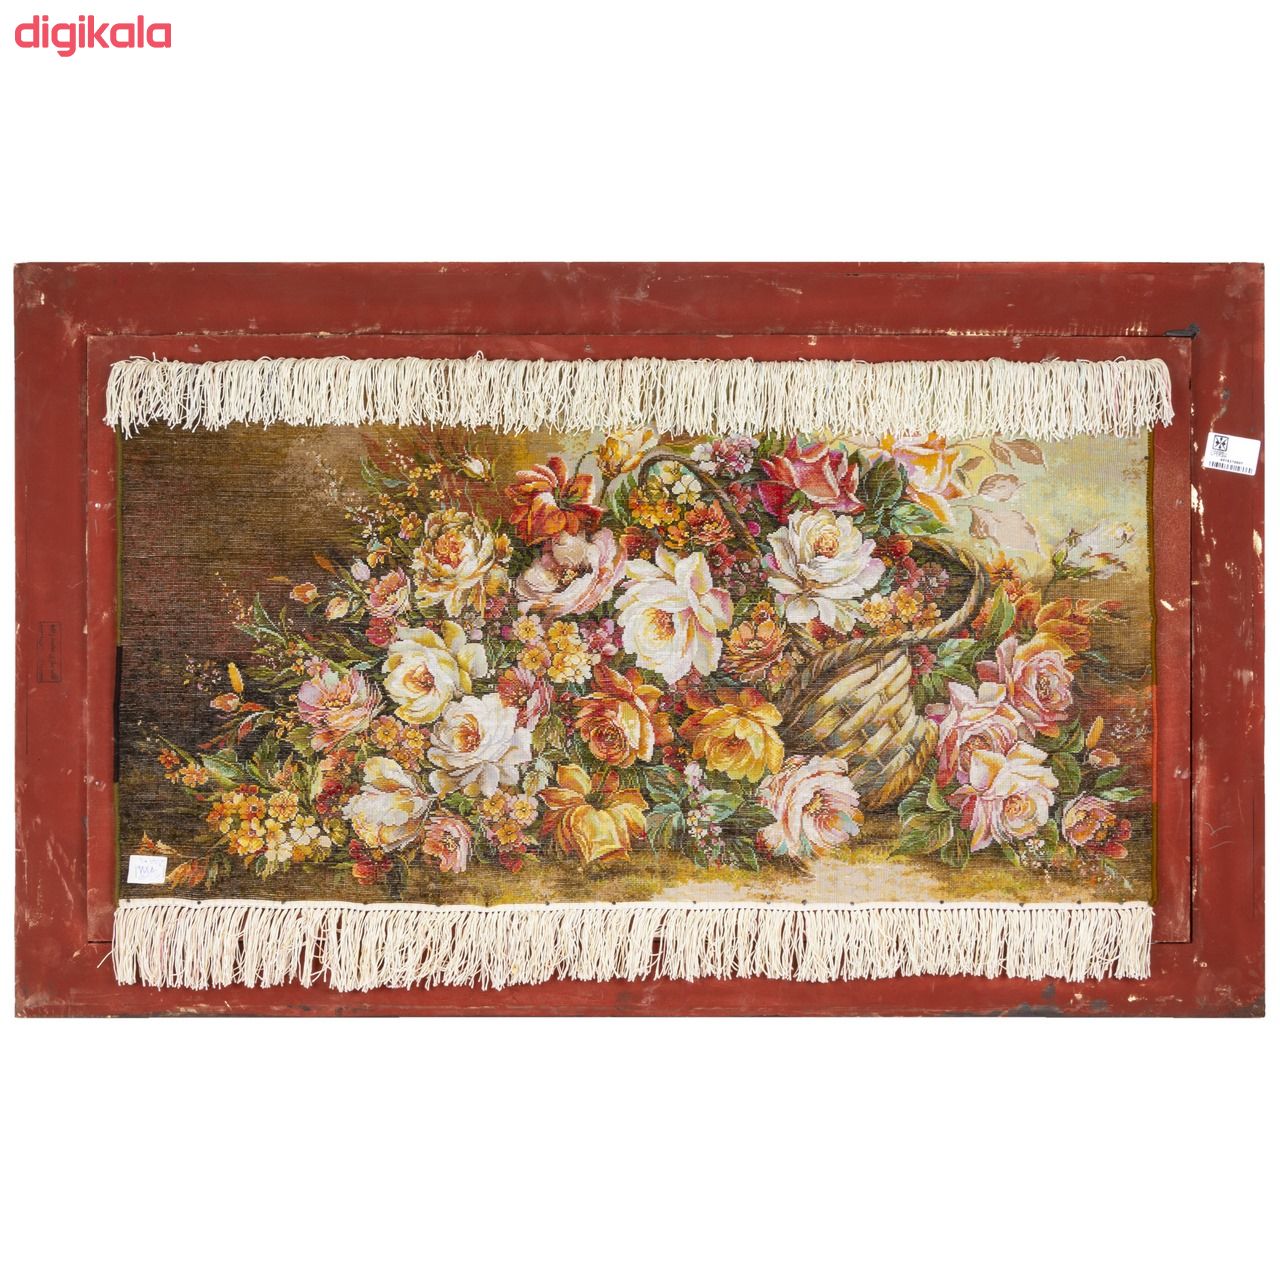  تابلو فرش دستباف سی پرشیا طرح گل های رز در سبد کد 9037